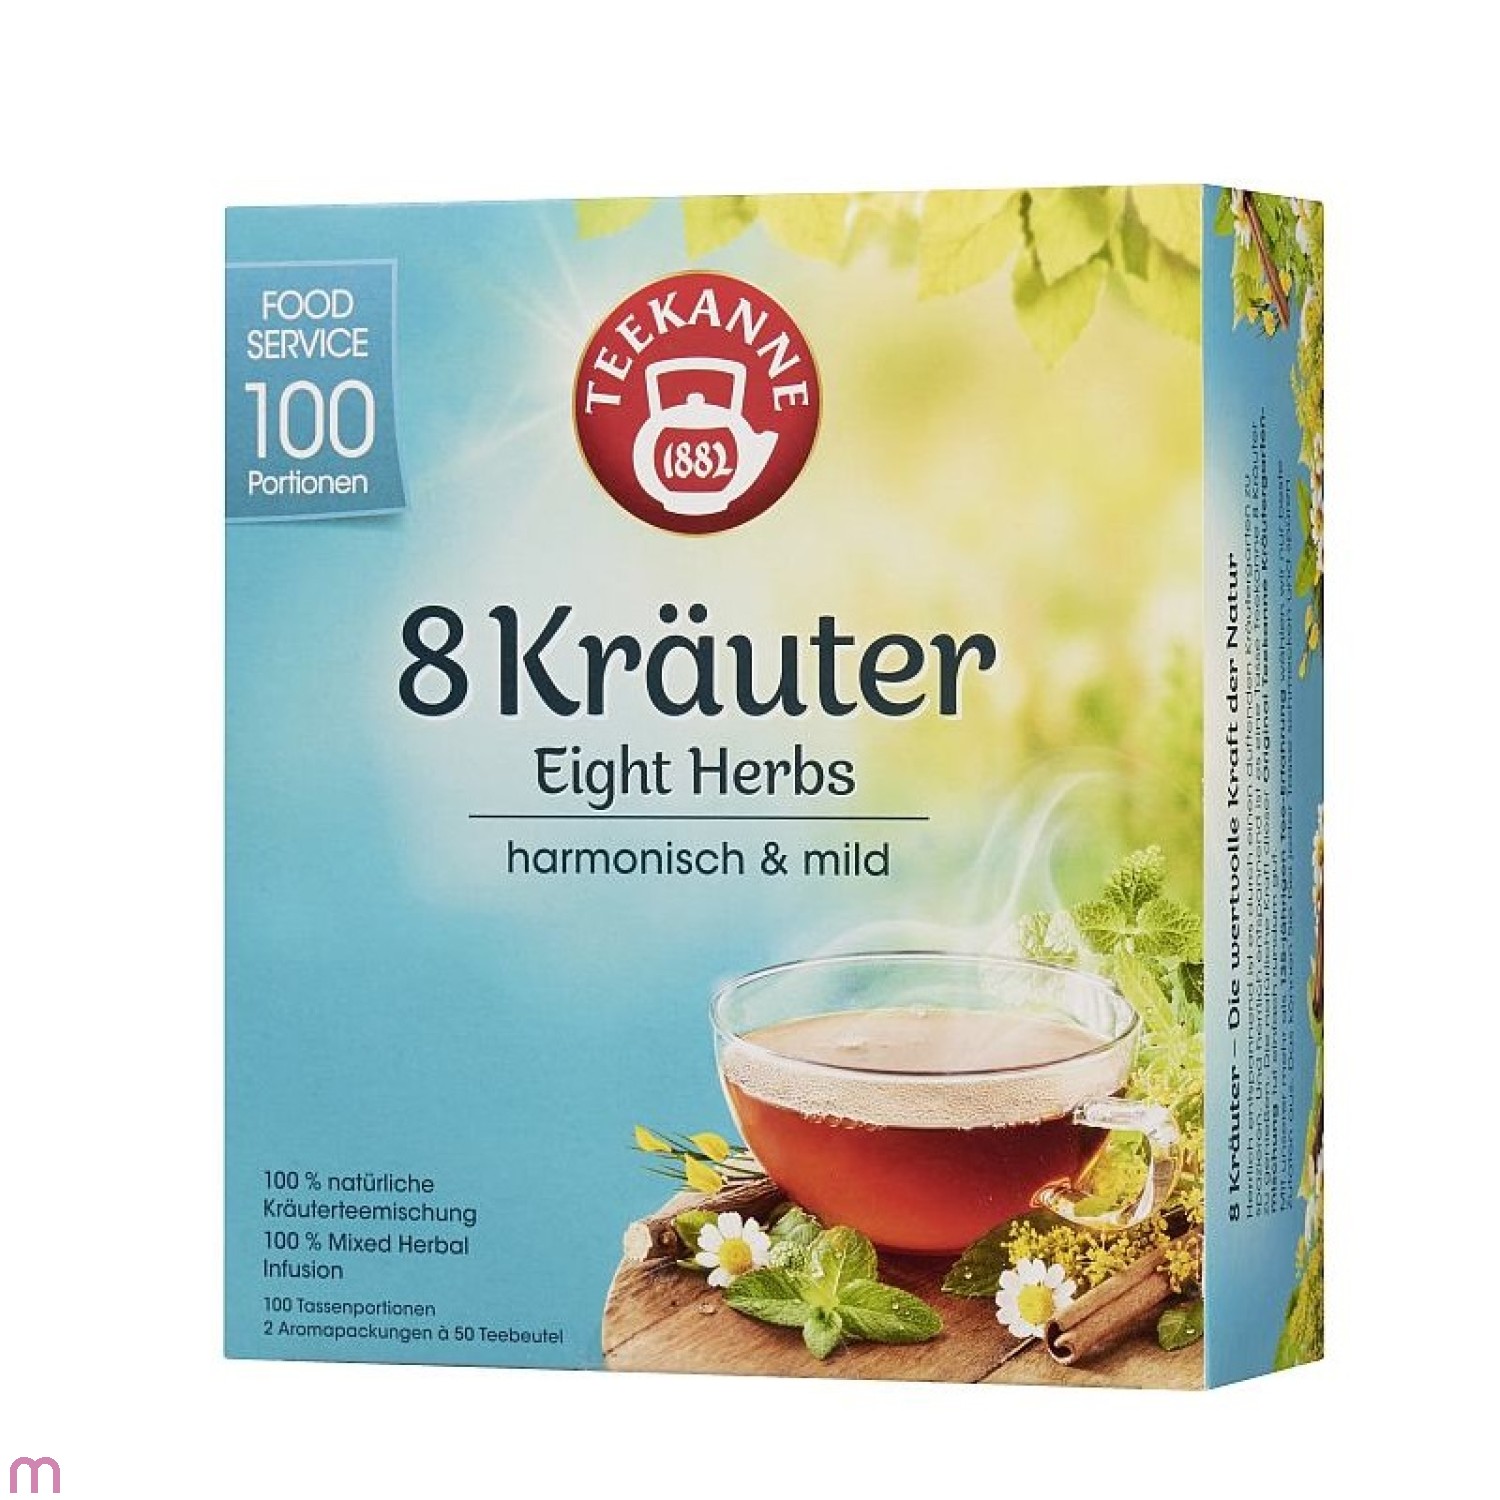 Teekanne 8 Kräuter 100 x 1,25g Teebeutel